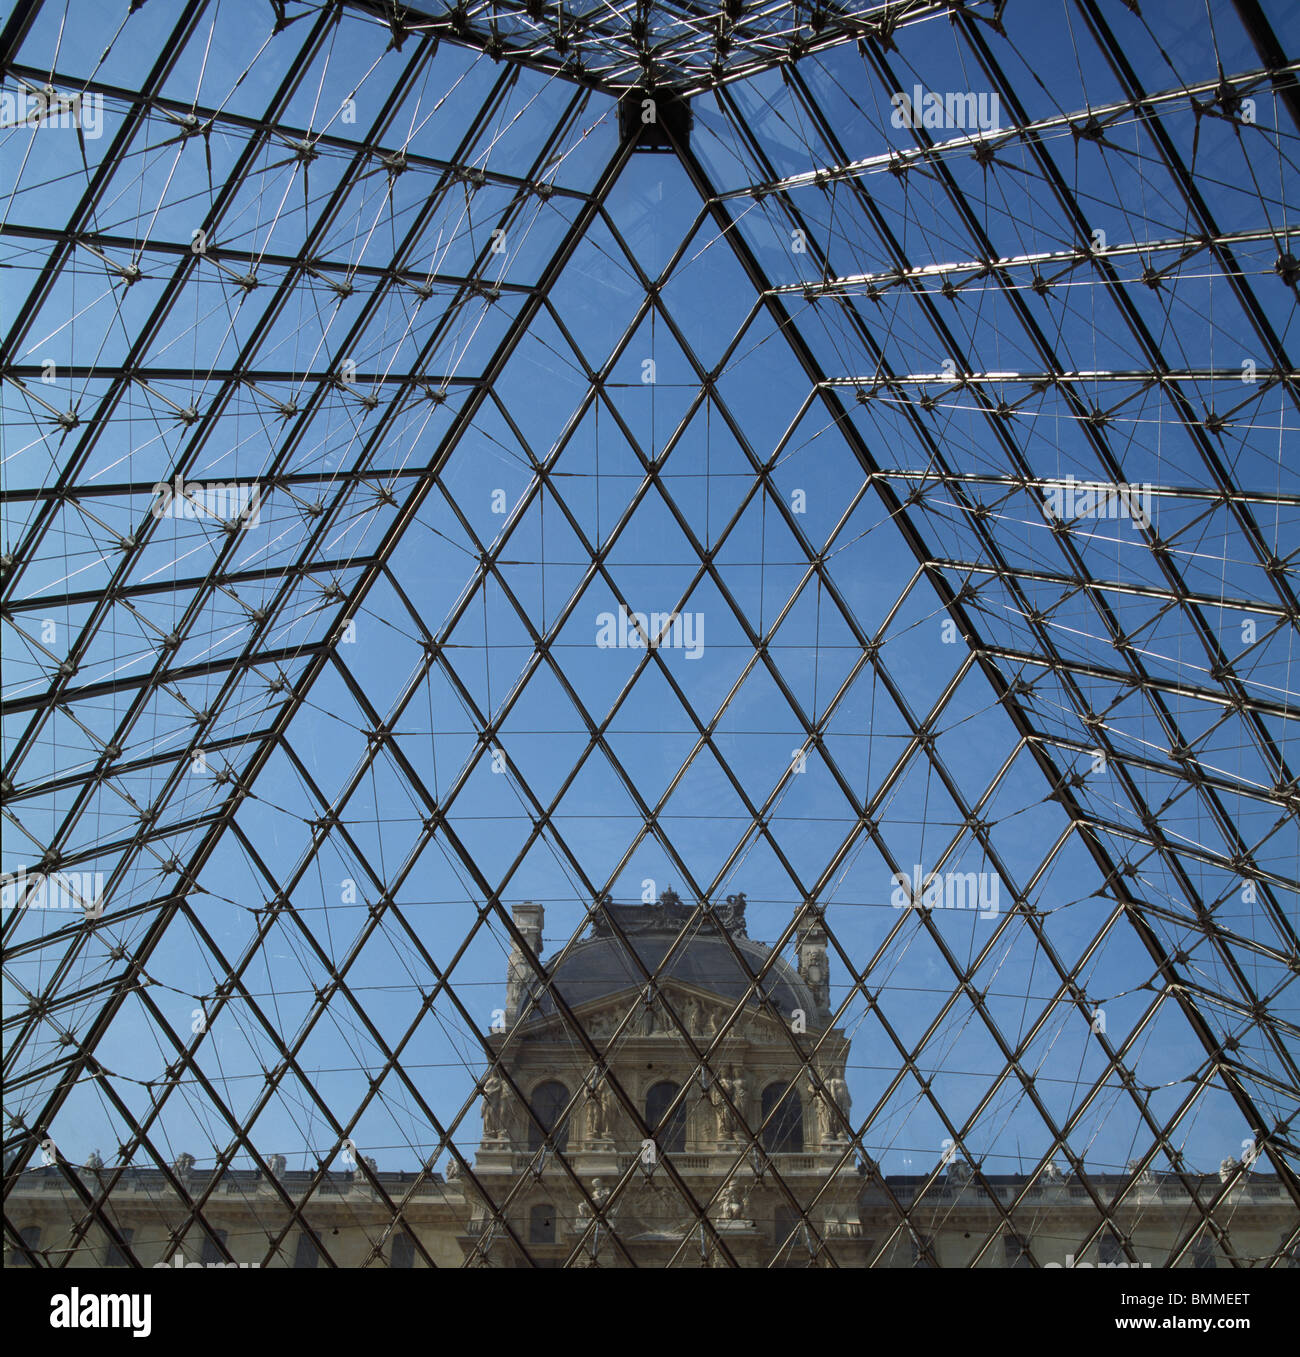 Museo del Louvre di Parigi. Acciaio e piramide in vetro, da I.M. Pei, 1988 con padiglione Denon dietro. Foto Stock